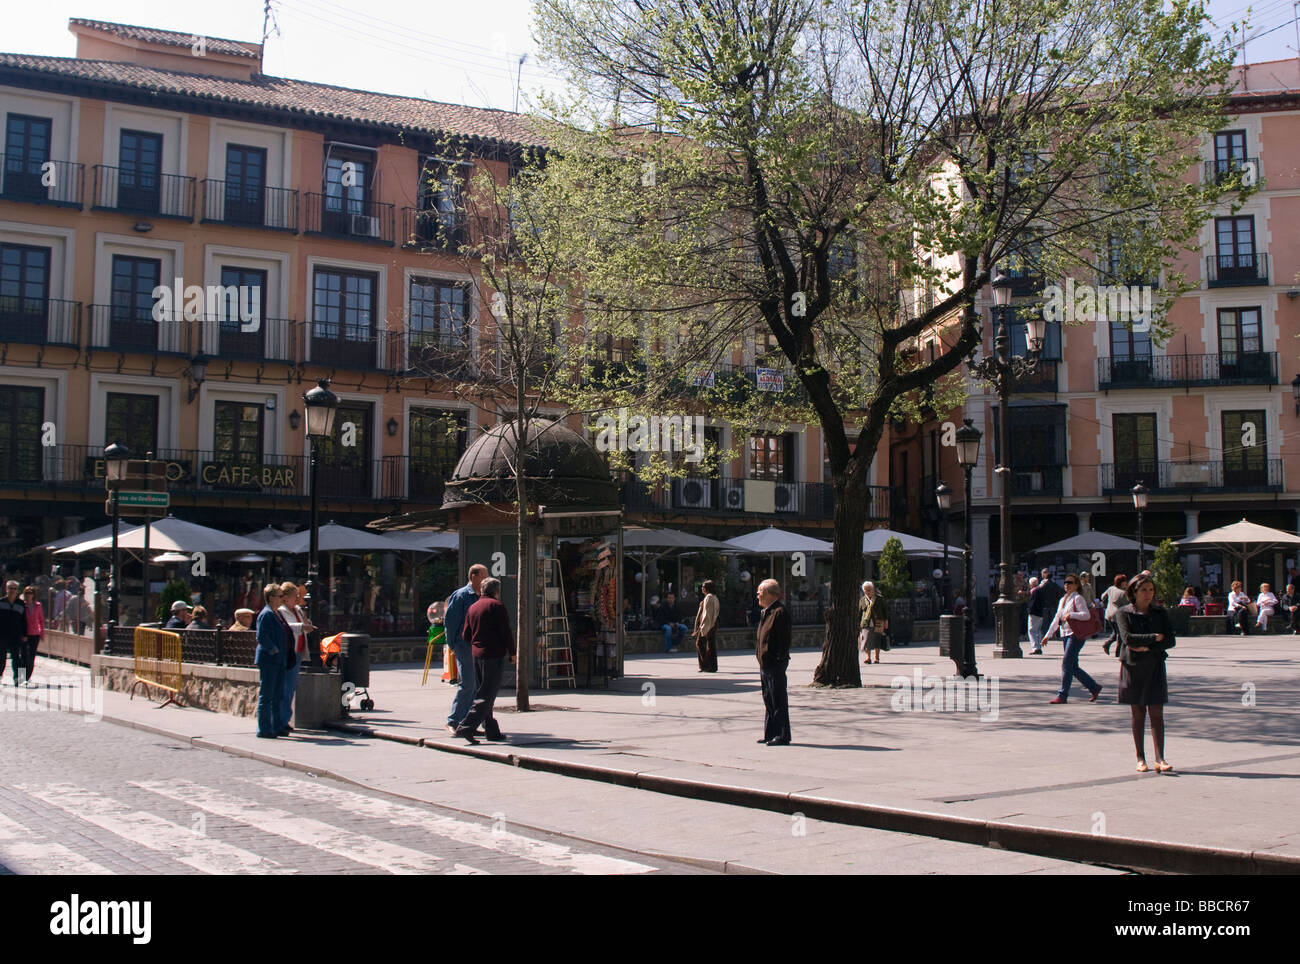 Toledo, Plaza de Zocodover, lugar de populaires reunion en el centro de la ciudad, con distintos Bares y restaurantes Banque D'Images